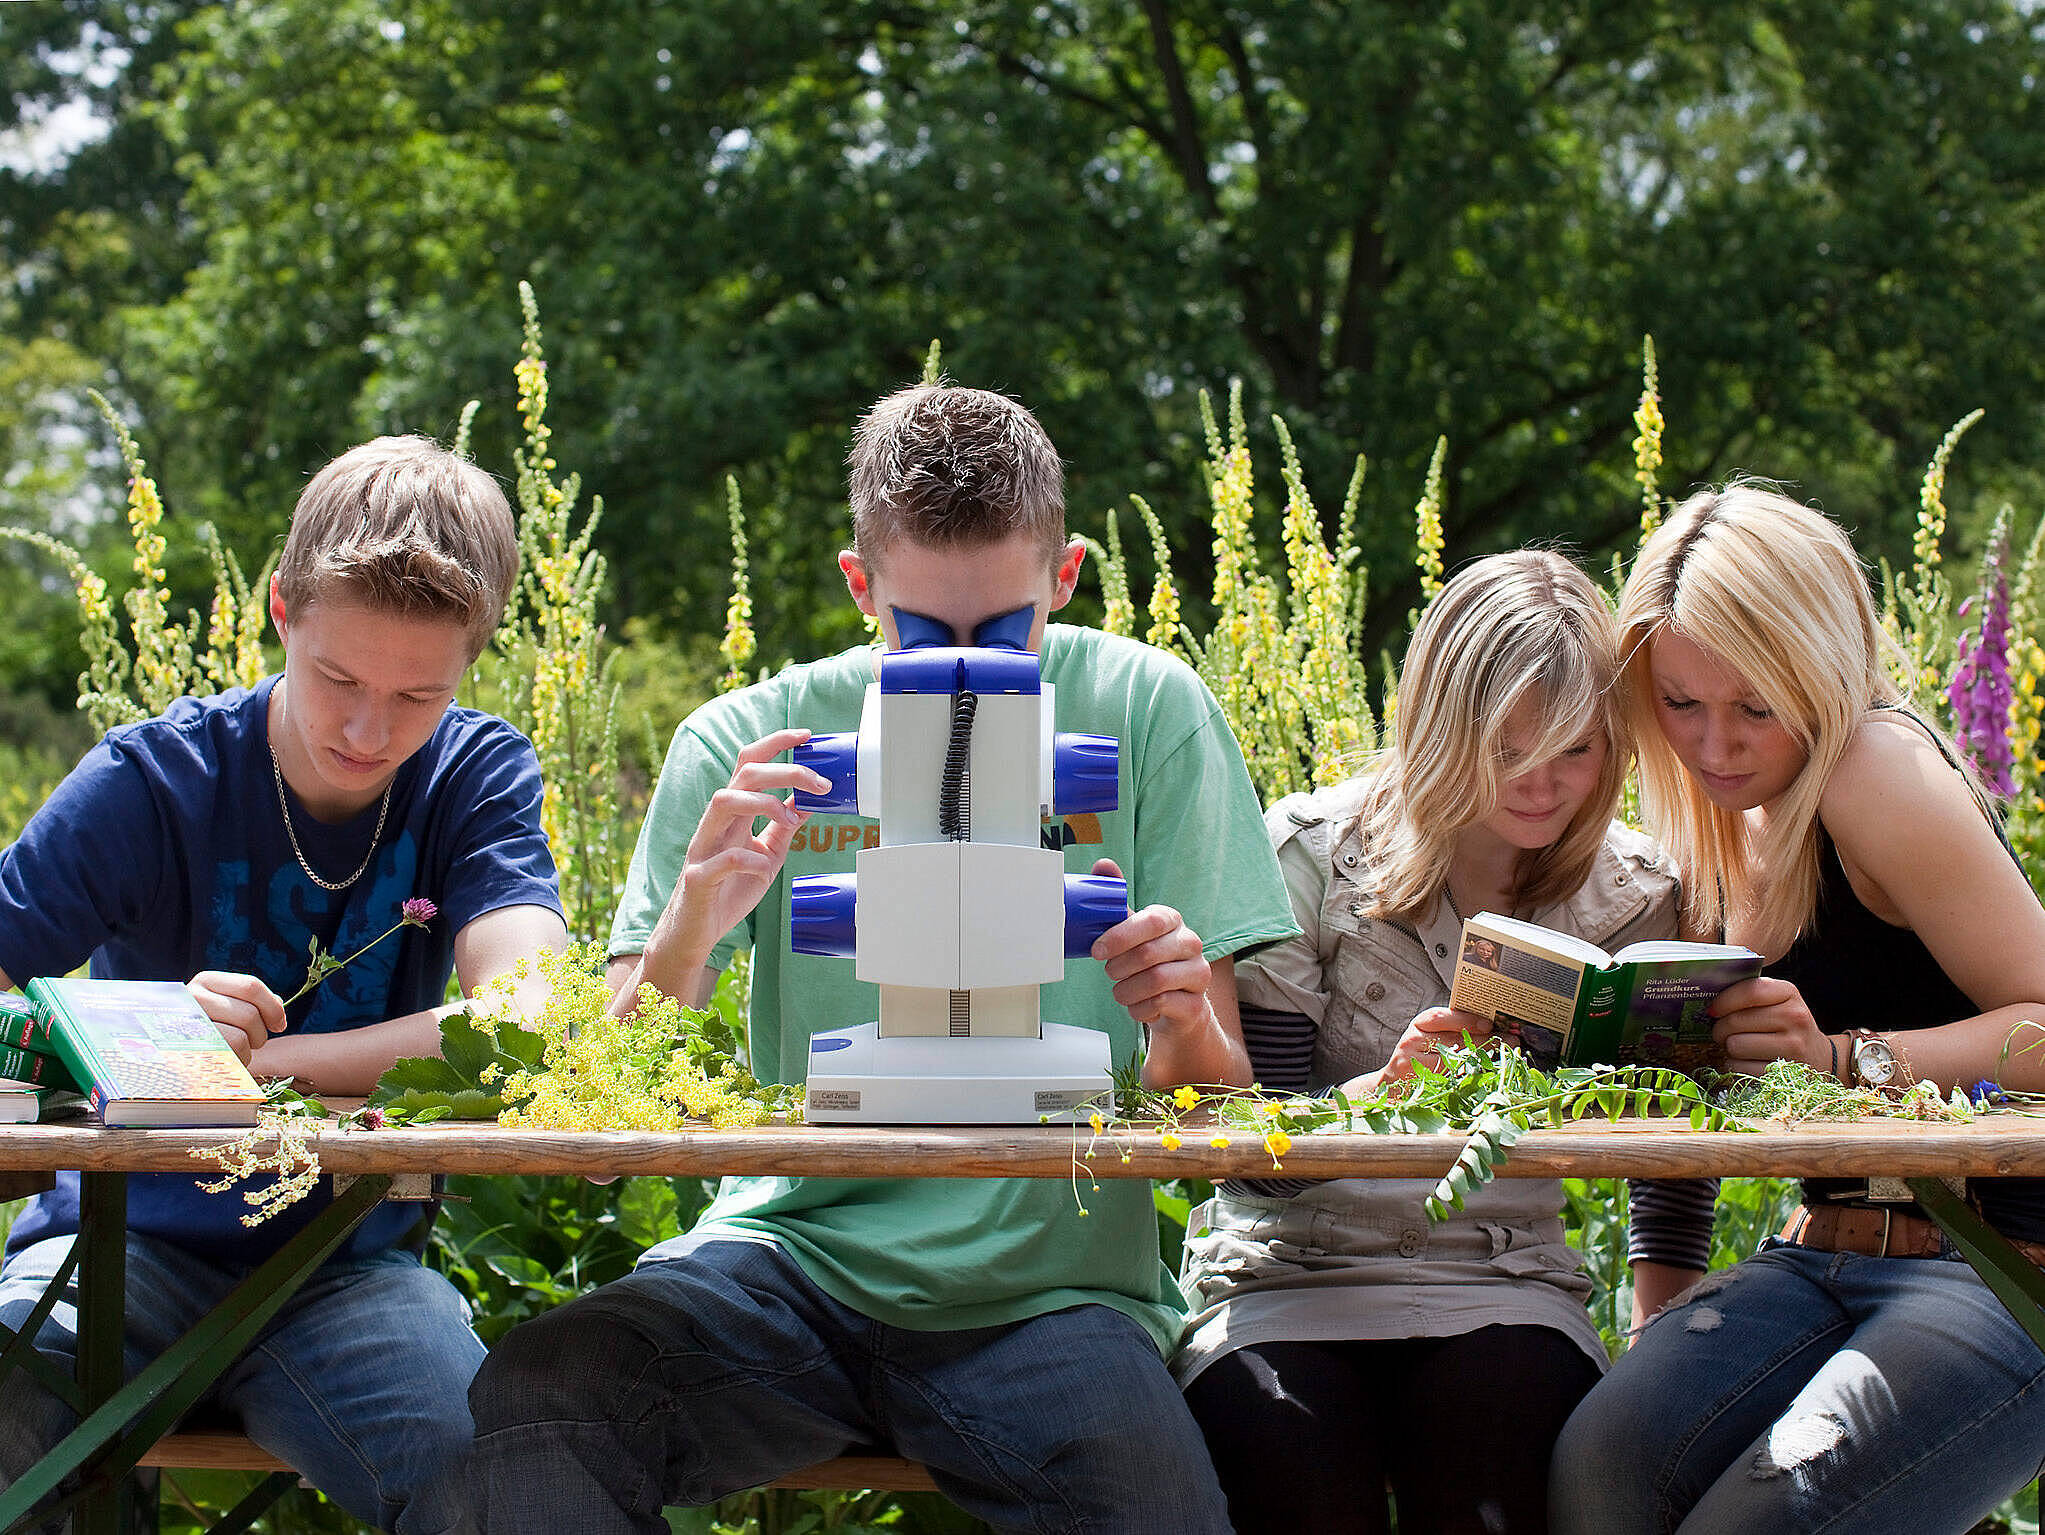 Forschende Jugendliche experimentieren im Rahmen der Grünen Schule im Außenbereich der botanika